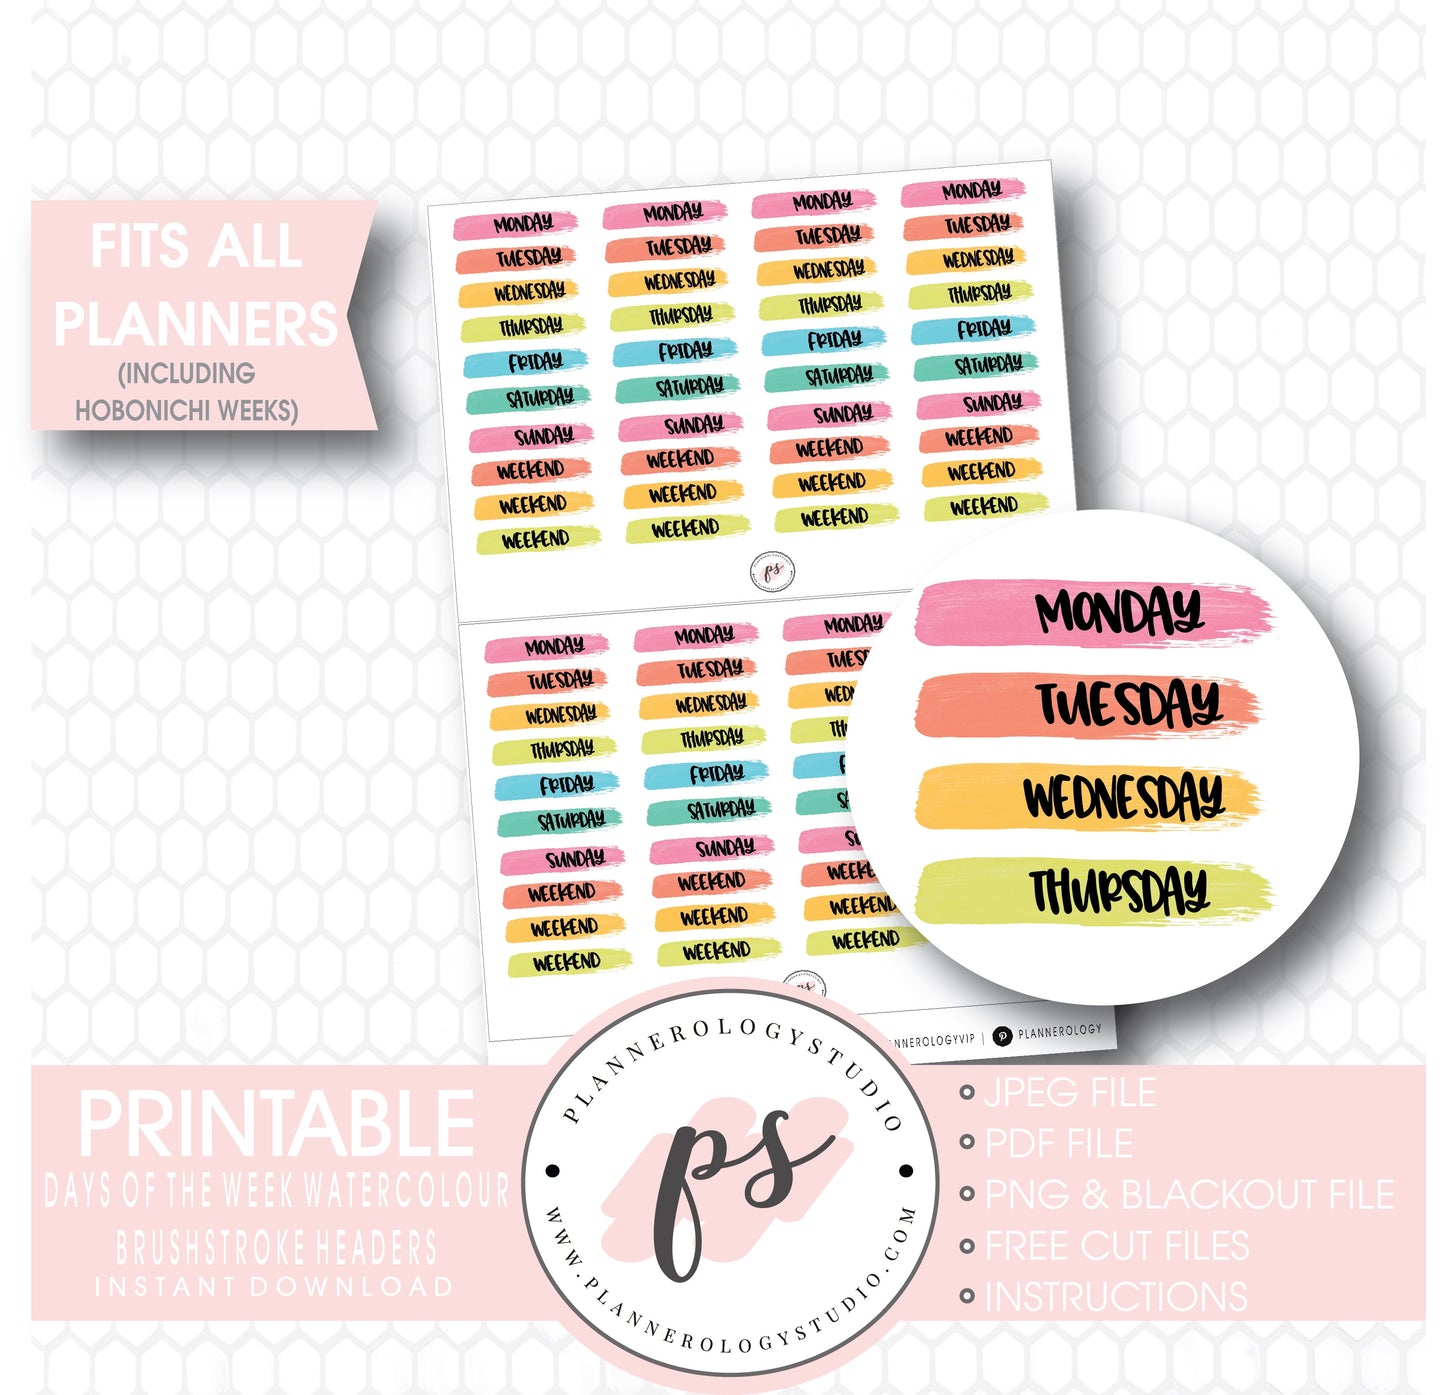 Watercolour Days of the Week & Weekend Brushstroke Headers Printable Planner Stickers - Plannerologystudio